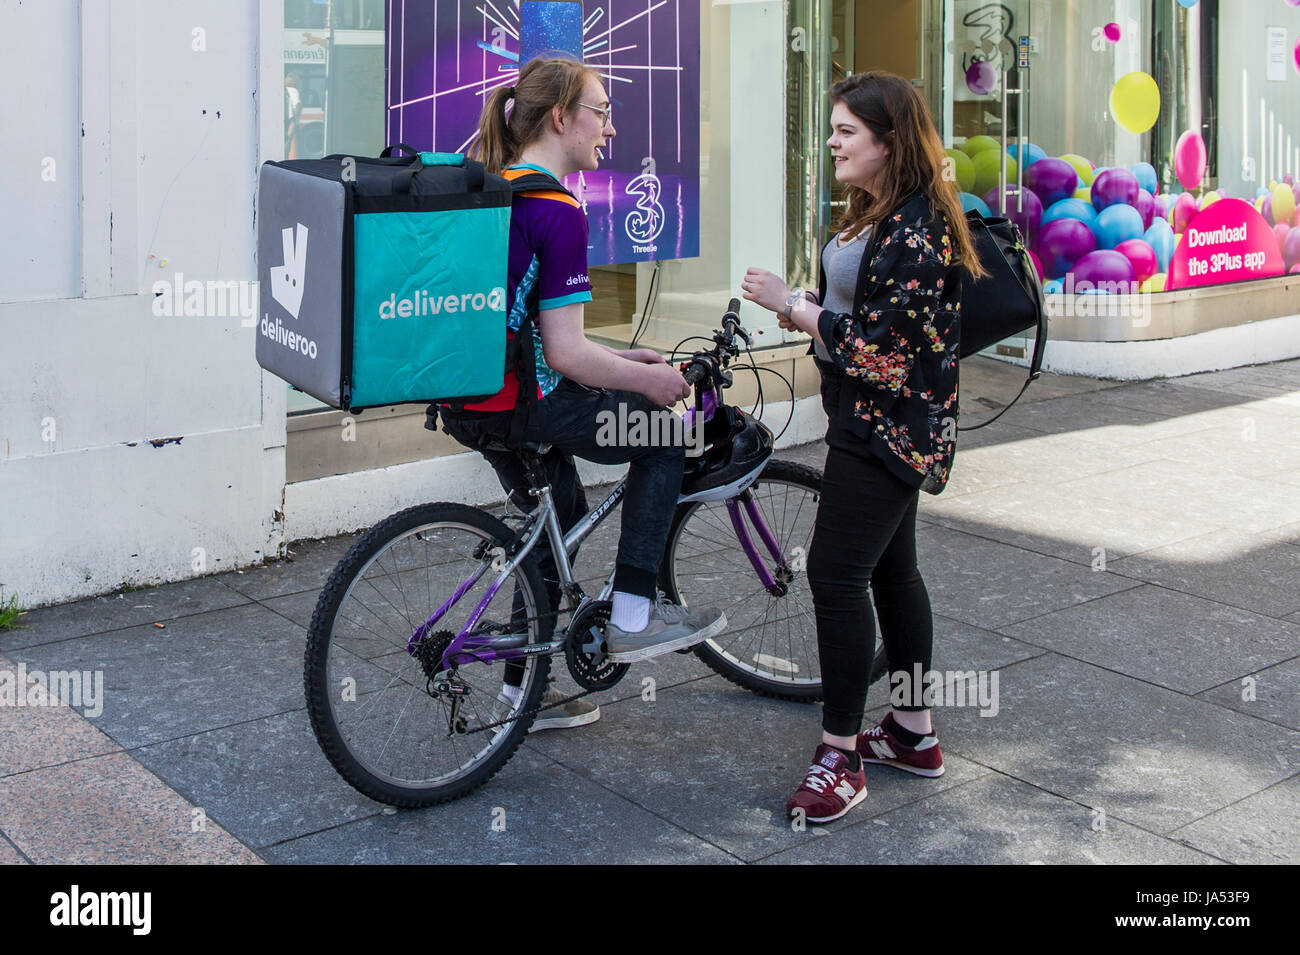 Entrega hembra Deliveroo rider charlando con un amigo durante una estancia en Cork, Irlanda. Foto de stock